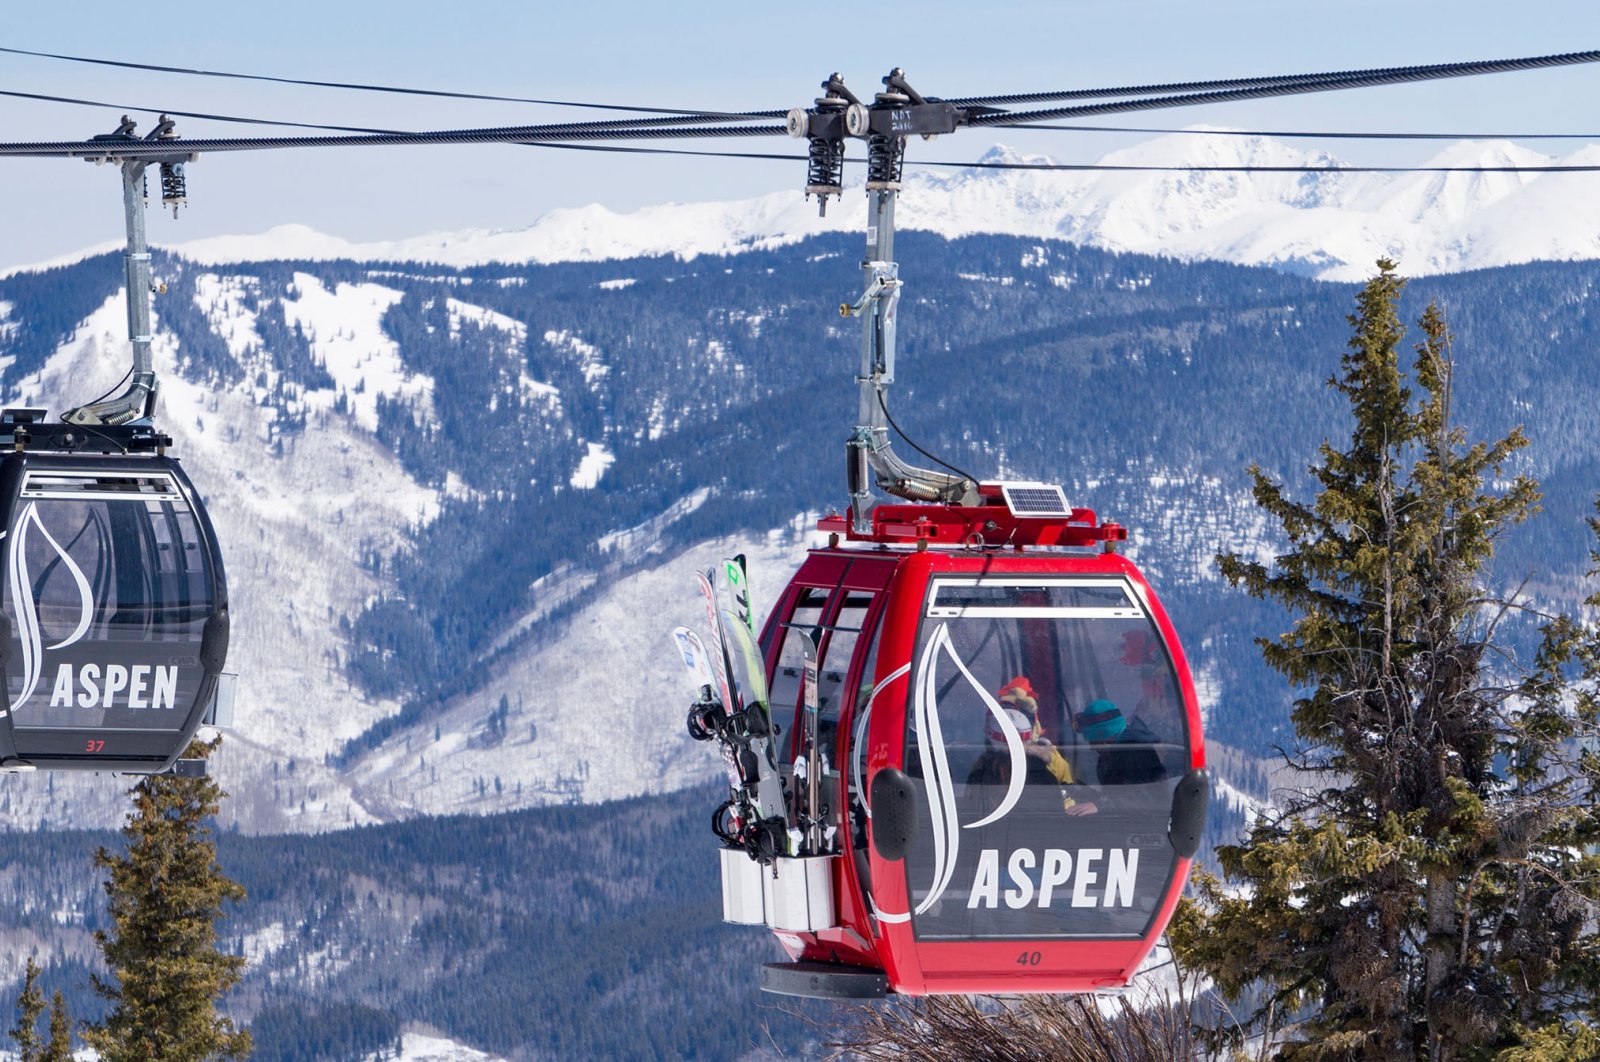 Gondolas delivering skiers for the descent in Aspen, Colorado, U.S. (Shutterstock Photo)